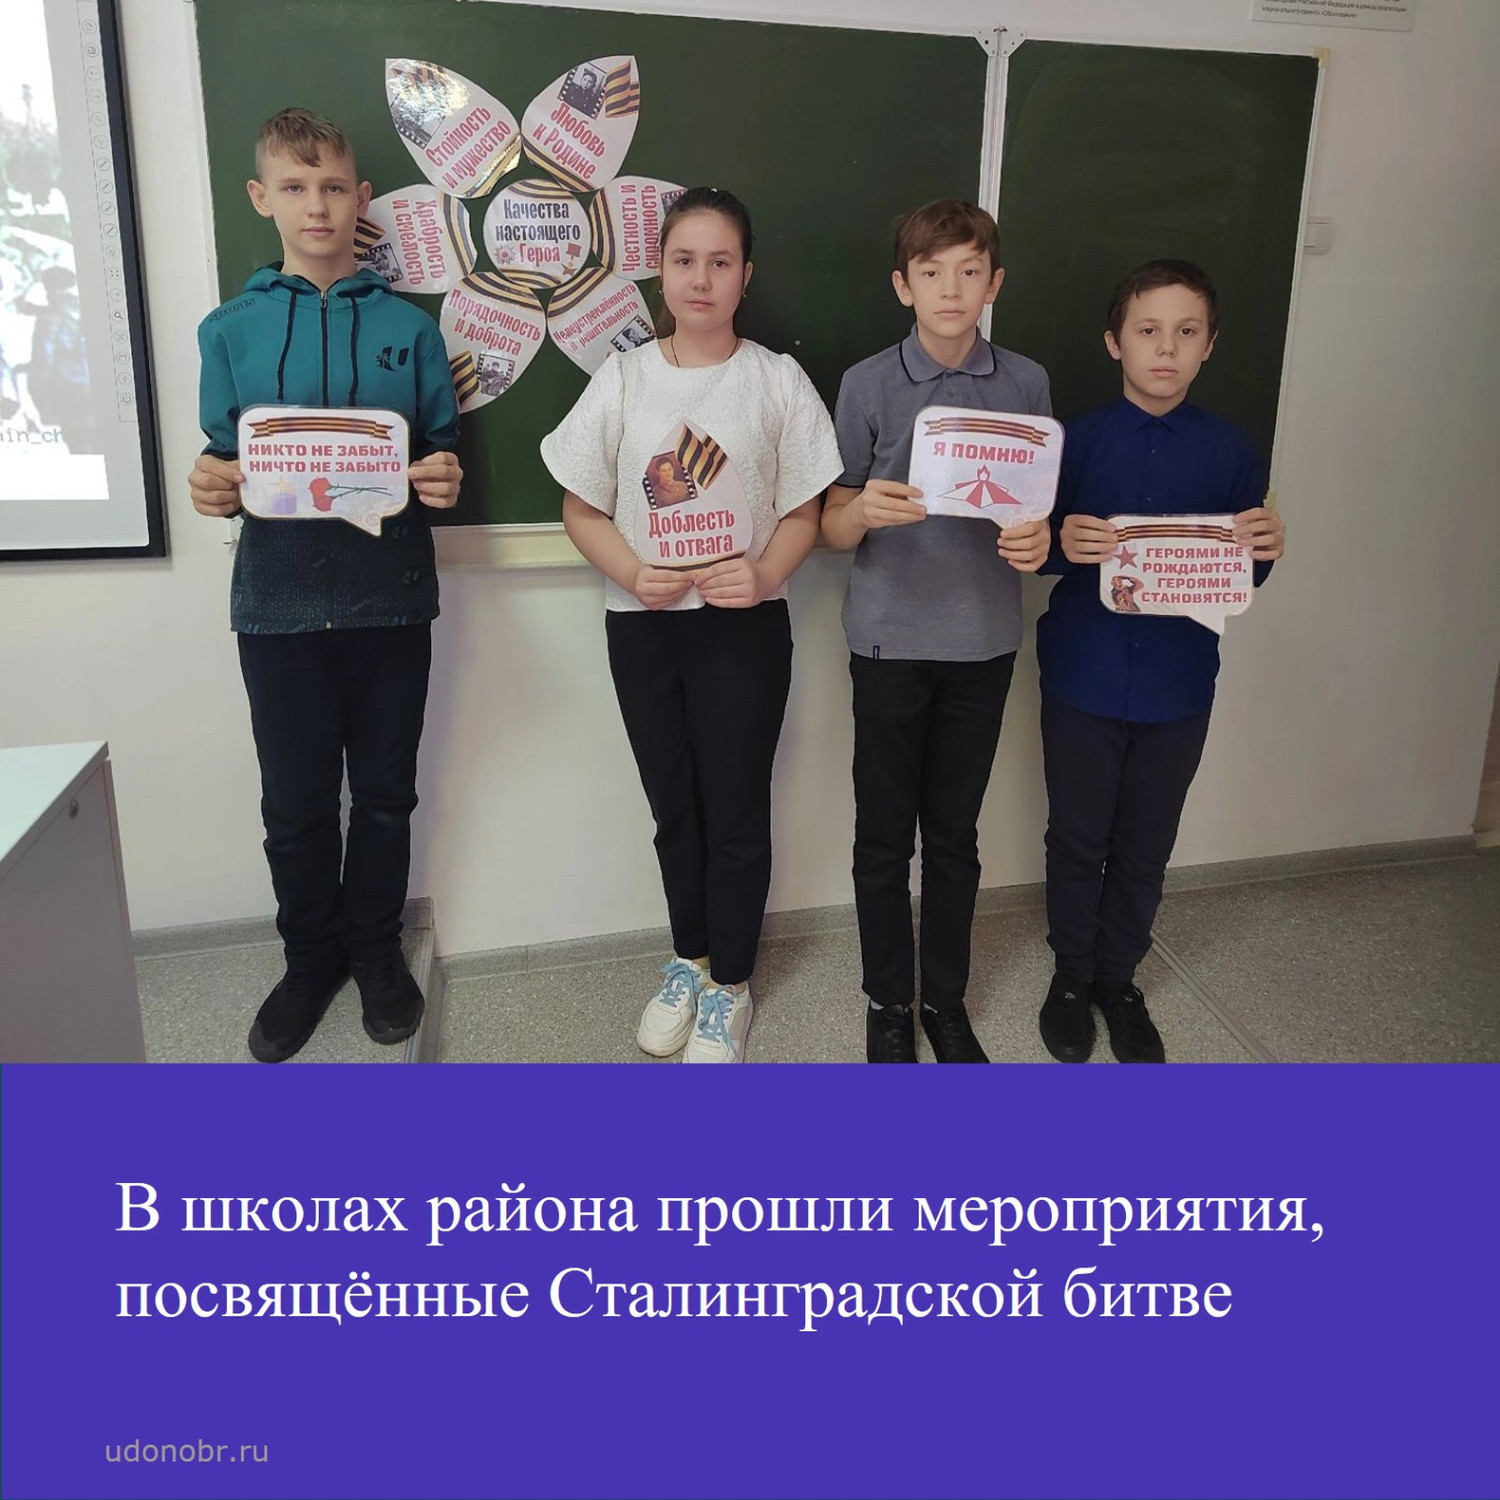 В школах района прошли мероприятия, посвященные Сталинградской битве